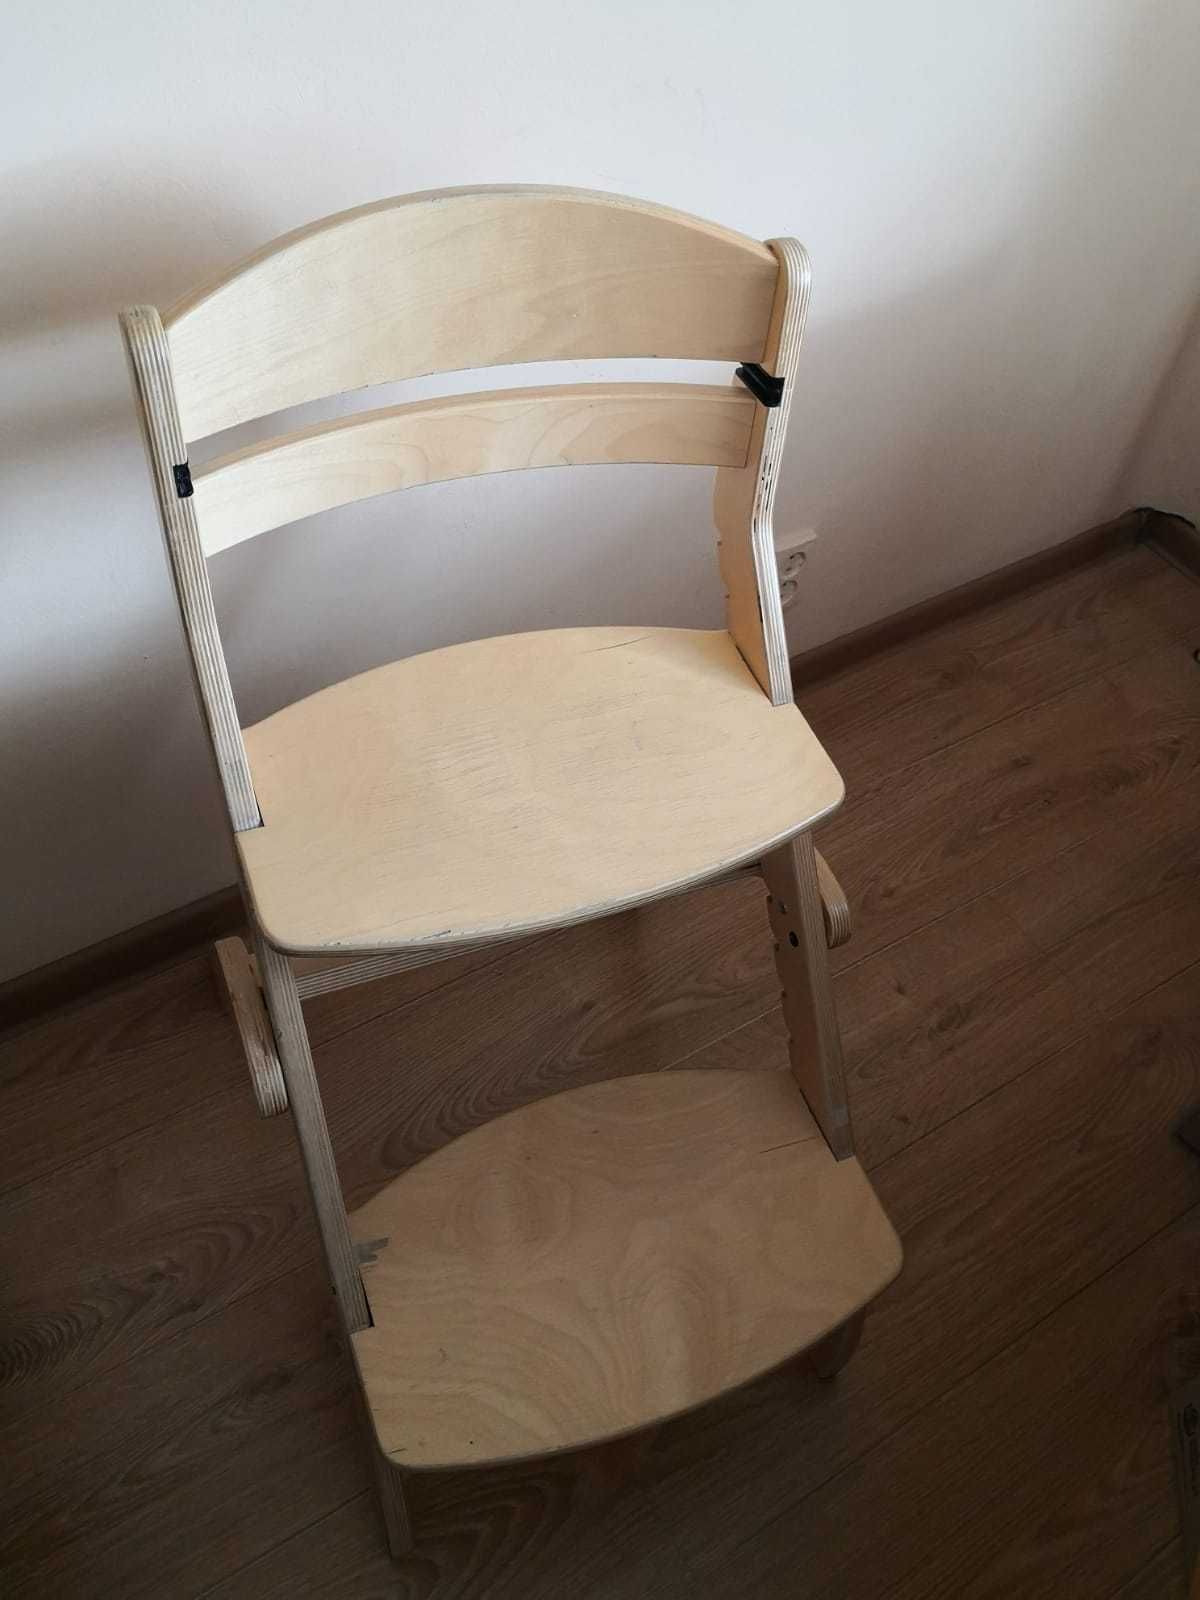 Krzesło dla dziecka.